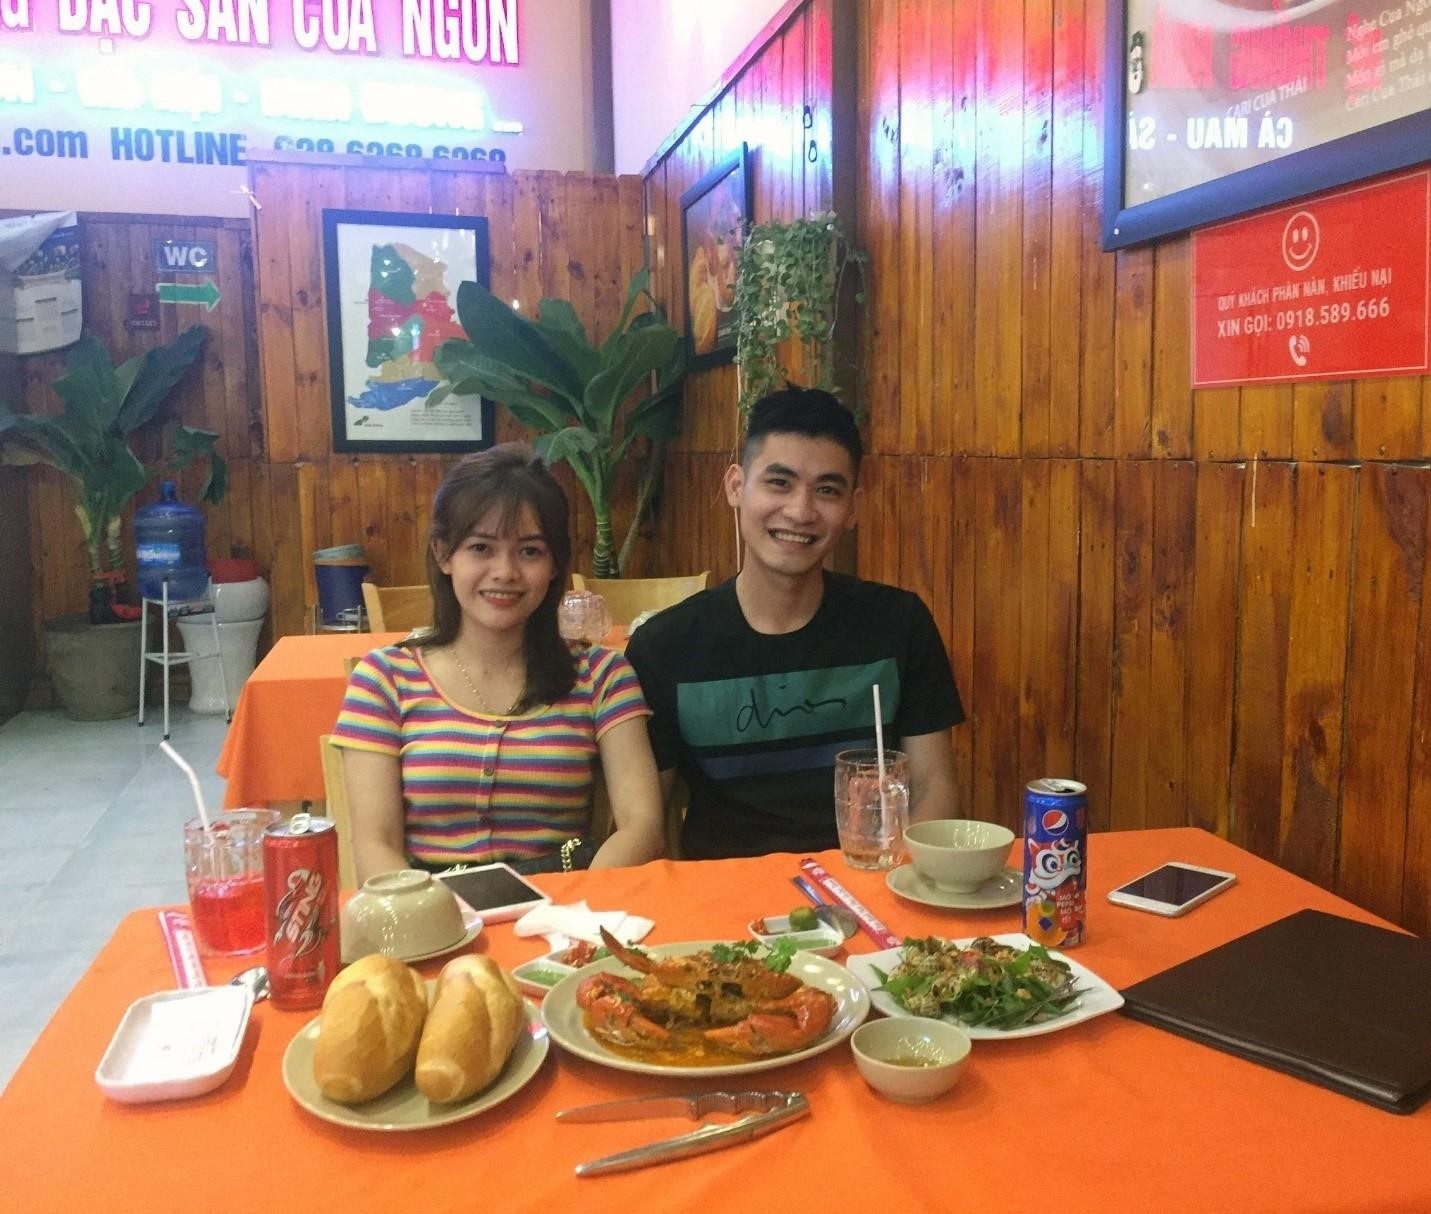 Quán Cua Ngon là một nhà hàng nổi tiếng tại Hà Nội, nổi bật với món ăn hải sản tươi ngon và phục vụ chuyên nghiệp. Không chỉ có không gian sang trọng và ấm cúng, Quán Cua Ngon còn mang đến cho khách hàng những trải nghiệm ẩm thực độc đáo và hấp dẫn.